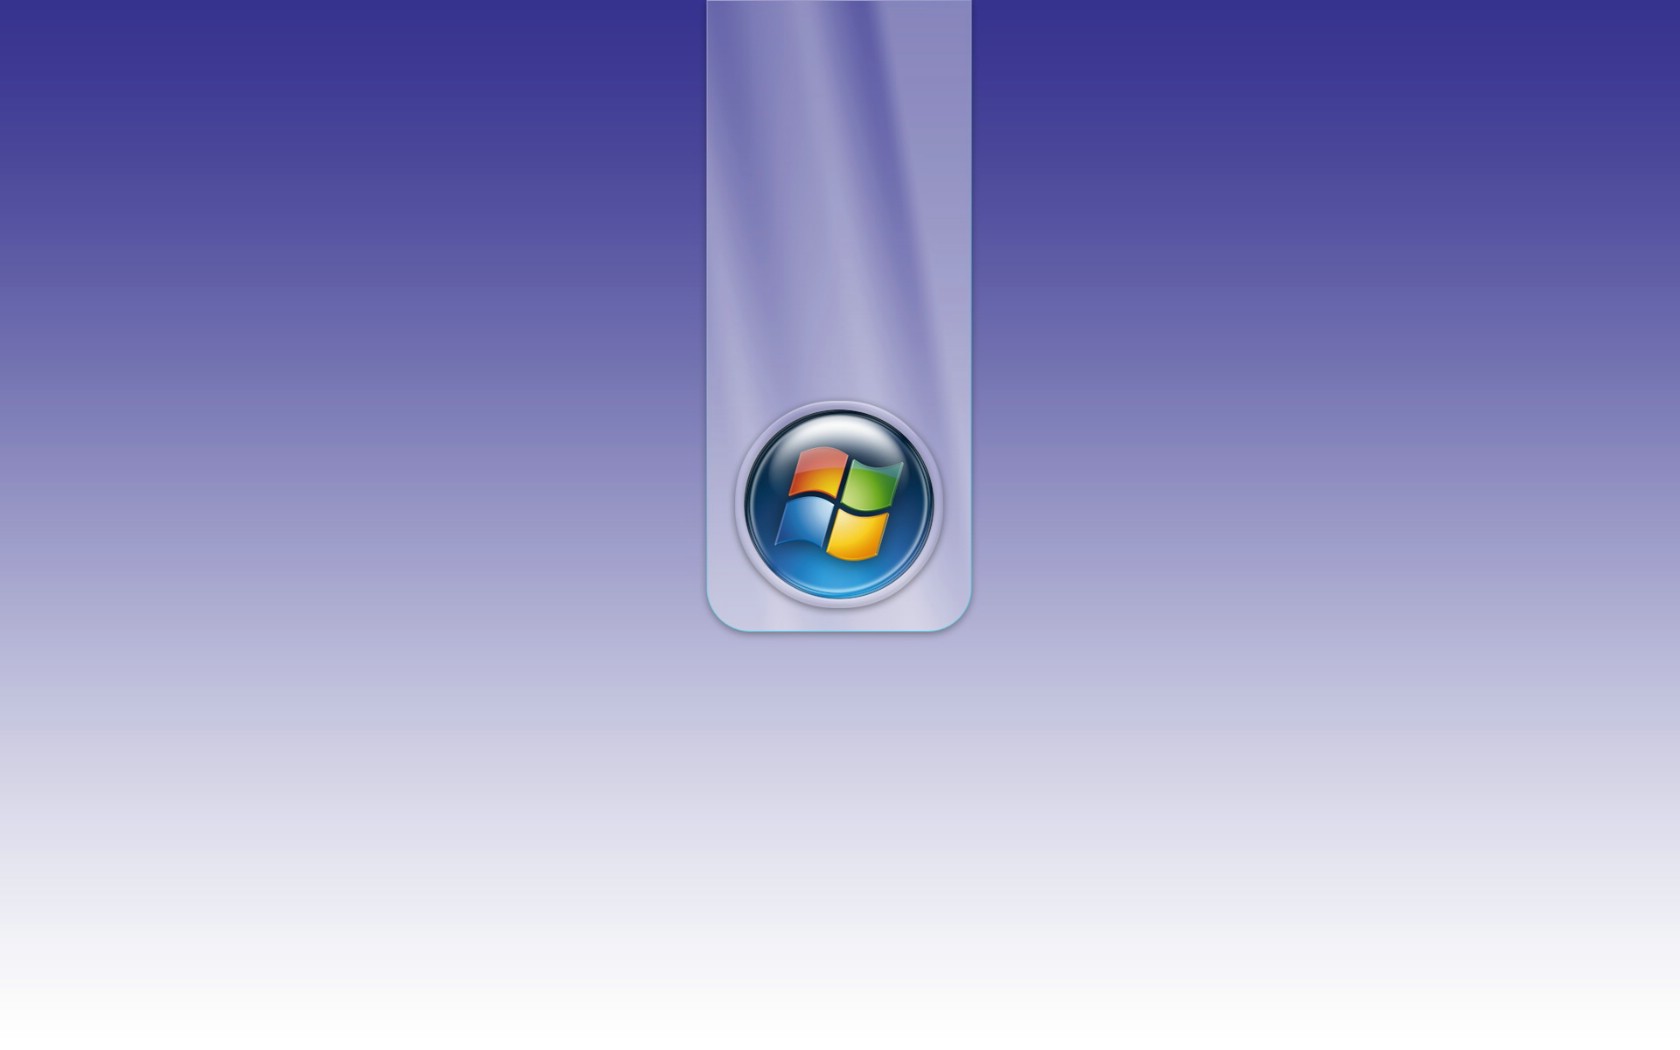 壁纸1680x1050超高分辨率Windows Vista简约壁纸壁纸 超高分辨率Windows Vista简约壁纸壁纸 超高分辨率Windows Vista简约壁纸图片 超高分辨率Windows Vista简约壁纸素材 创意壁纸 创意图库 创意图片素材桌面壁纸